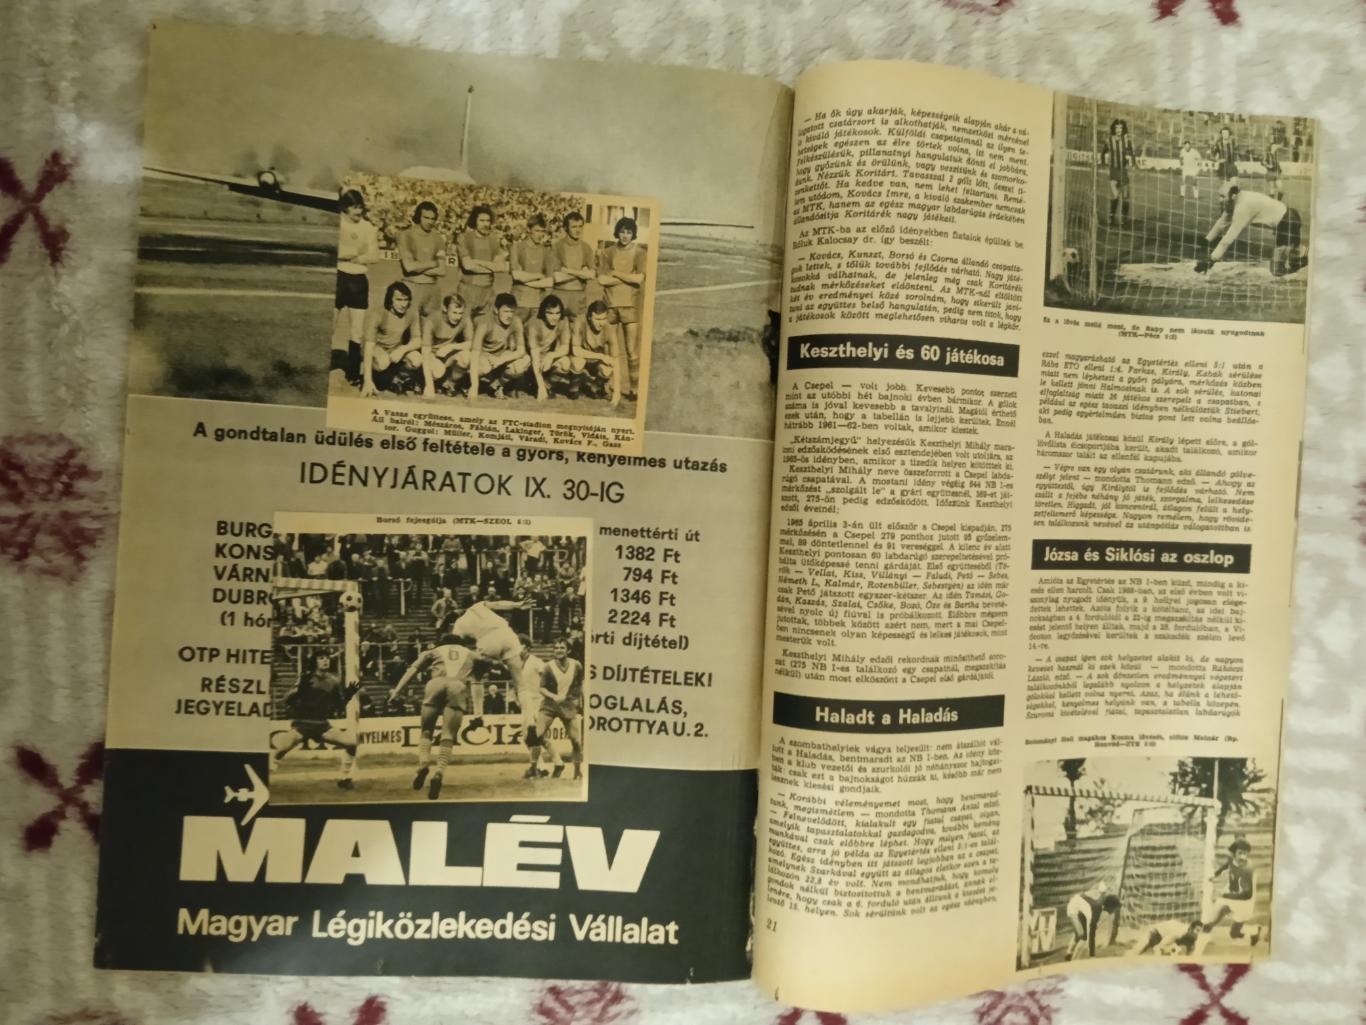 Журнал.Лабдаругаш № 6 1974 г. (Венгрия).(ЧМ 1974). 1